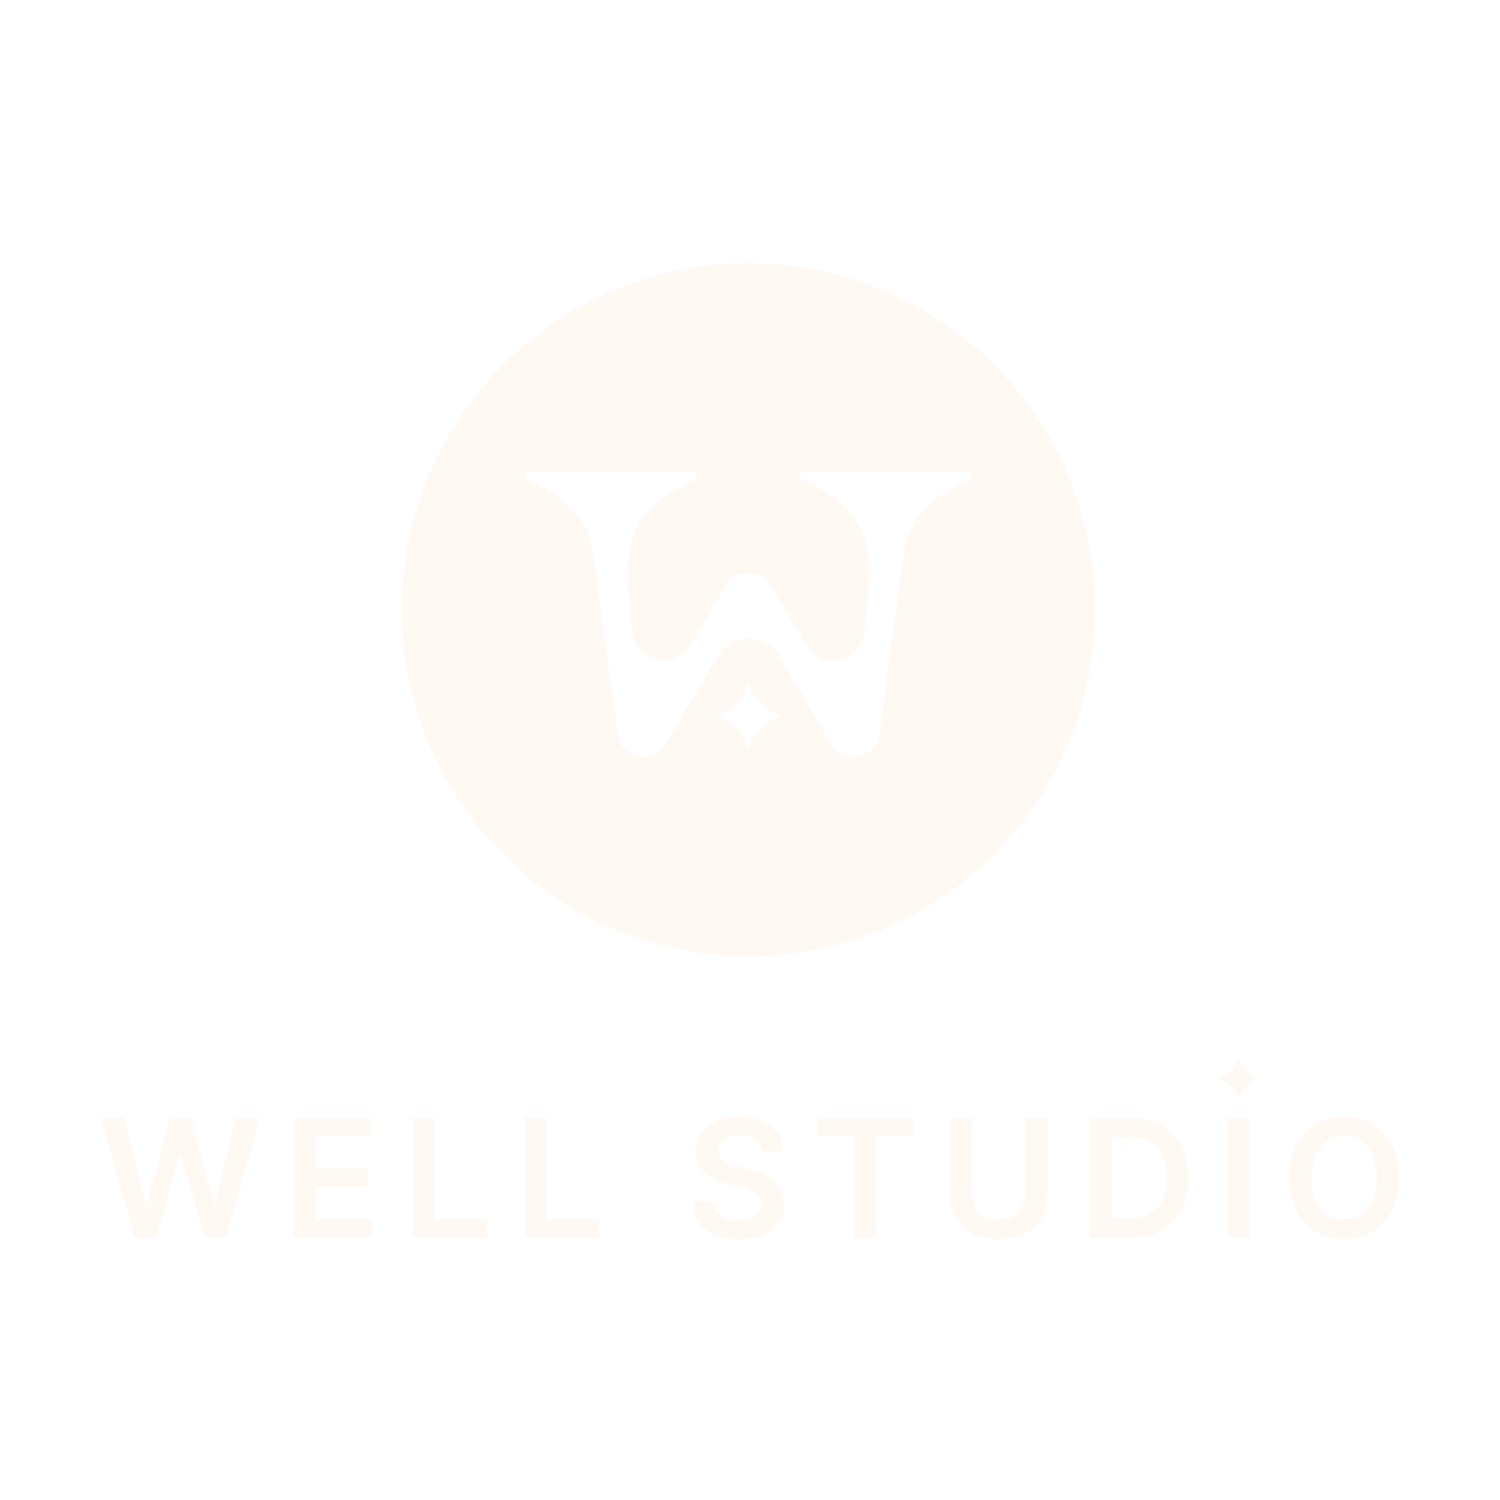 Well Studio